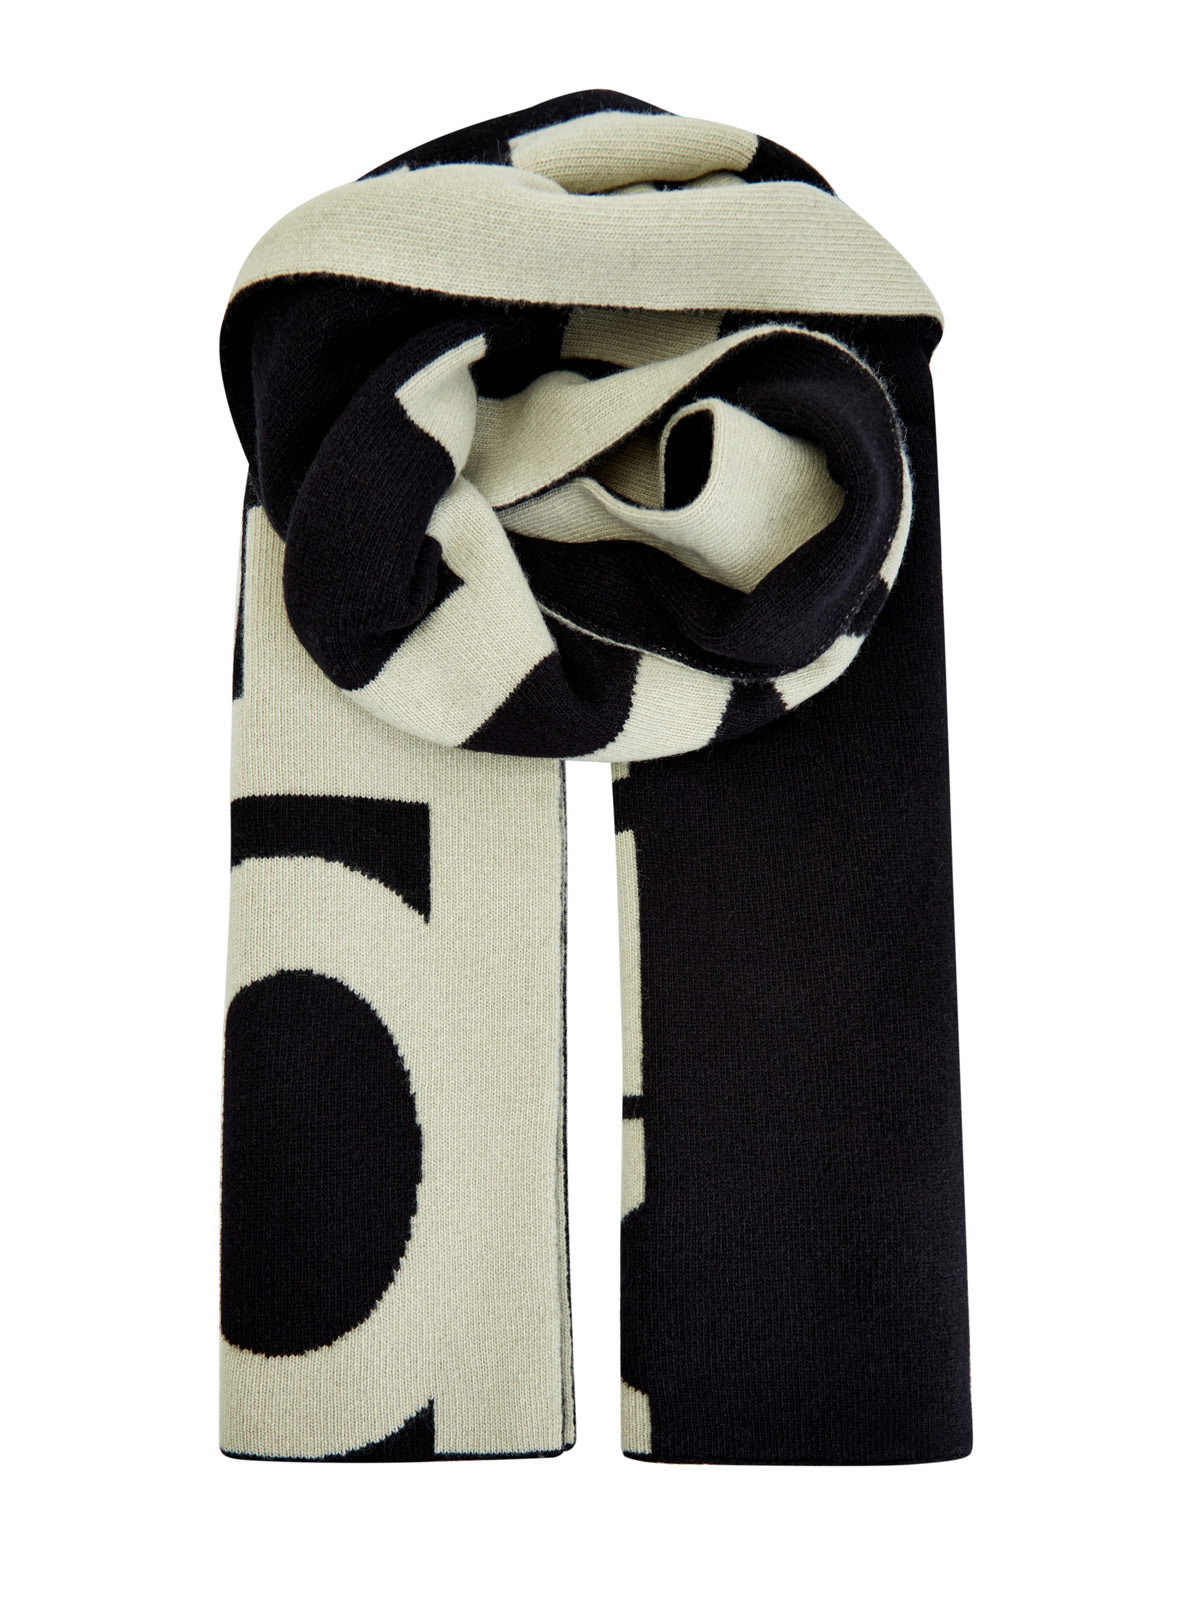 Шерстяной шарф с макро-принтом в технике интарсии OFF-WHITE, цвет черно-белый, размер 36;36.5;37.5;38;38.5;39;40